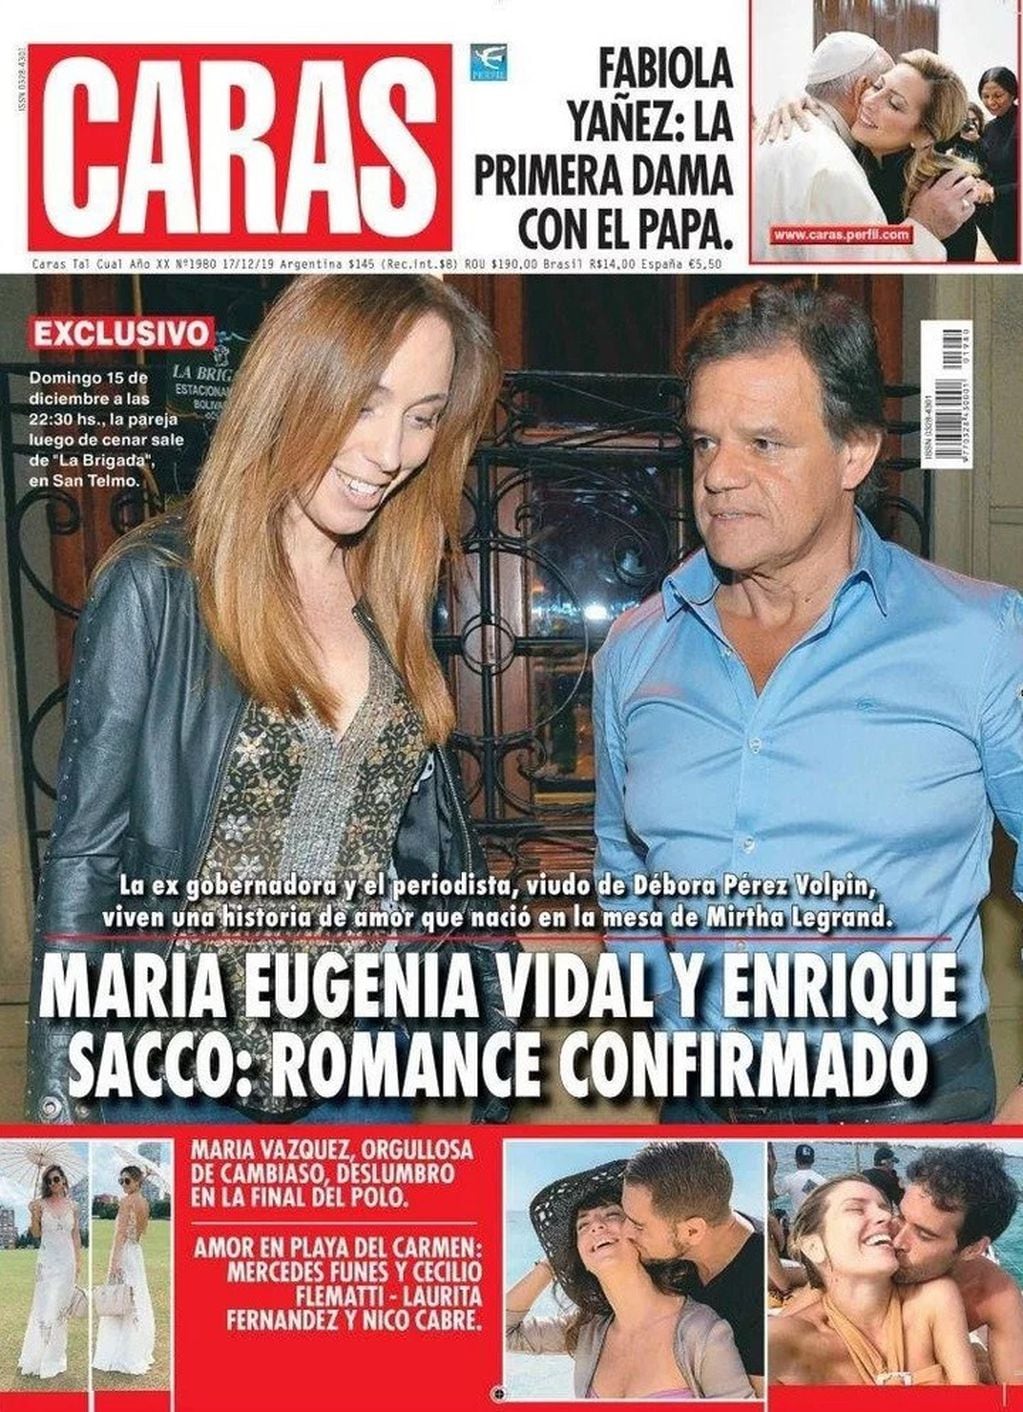 La revista Caras confirmó el romance entre María Eugenia Vidal y Enrique Sacco (Foto: portada Caras)